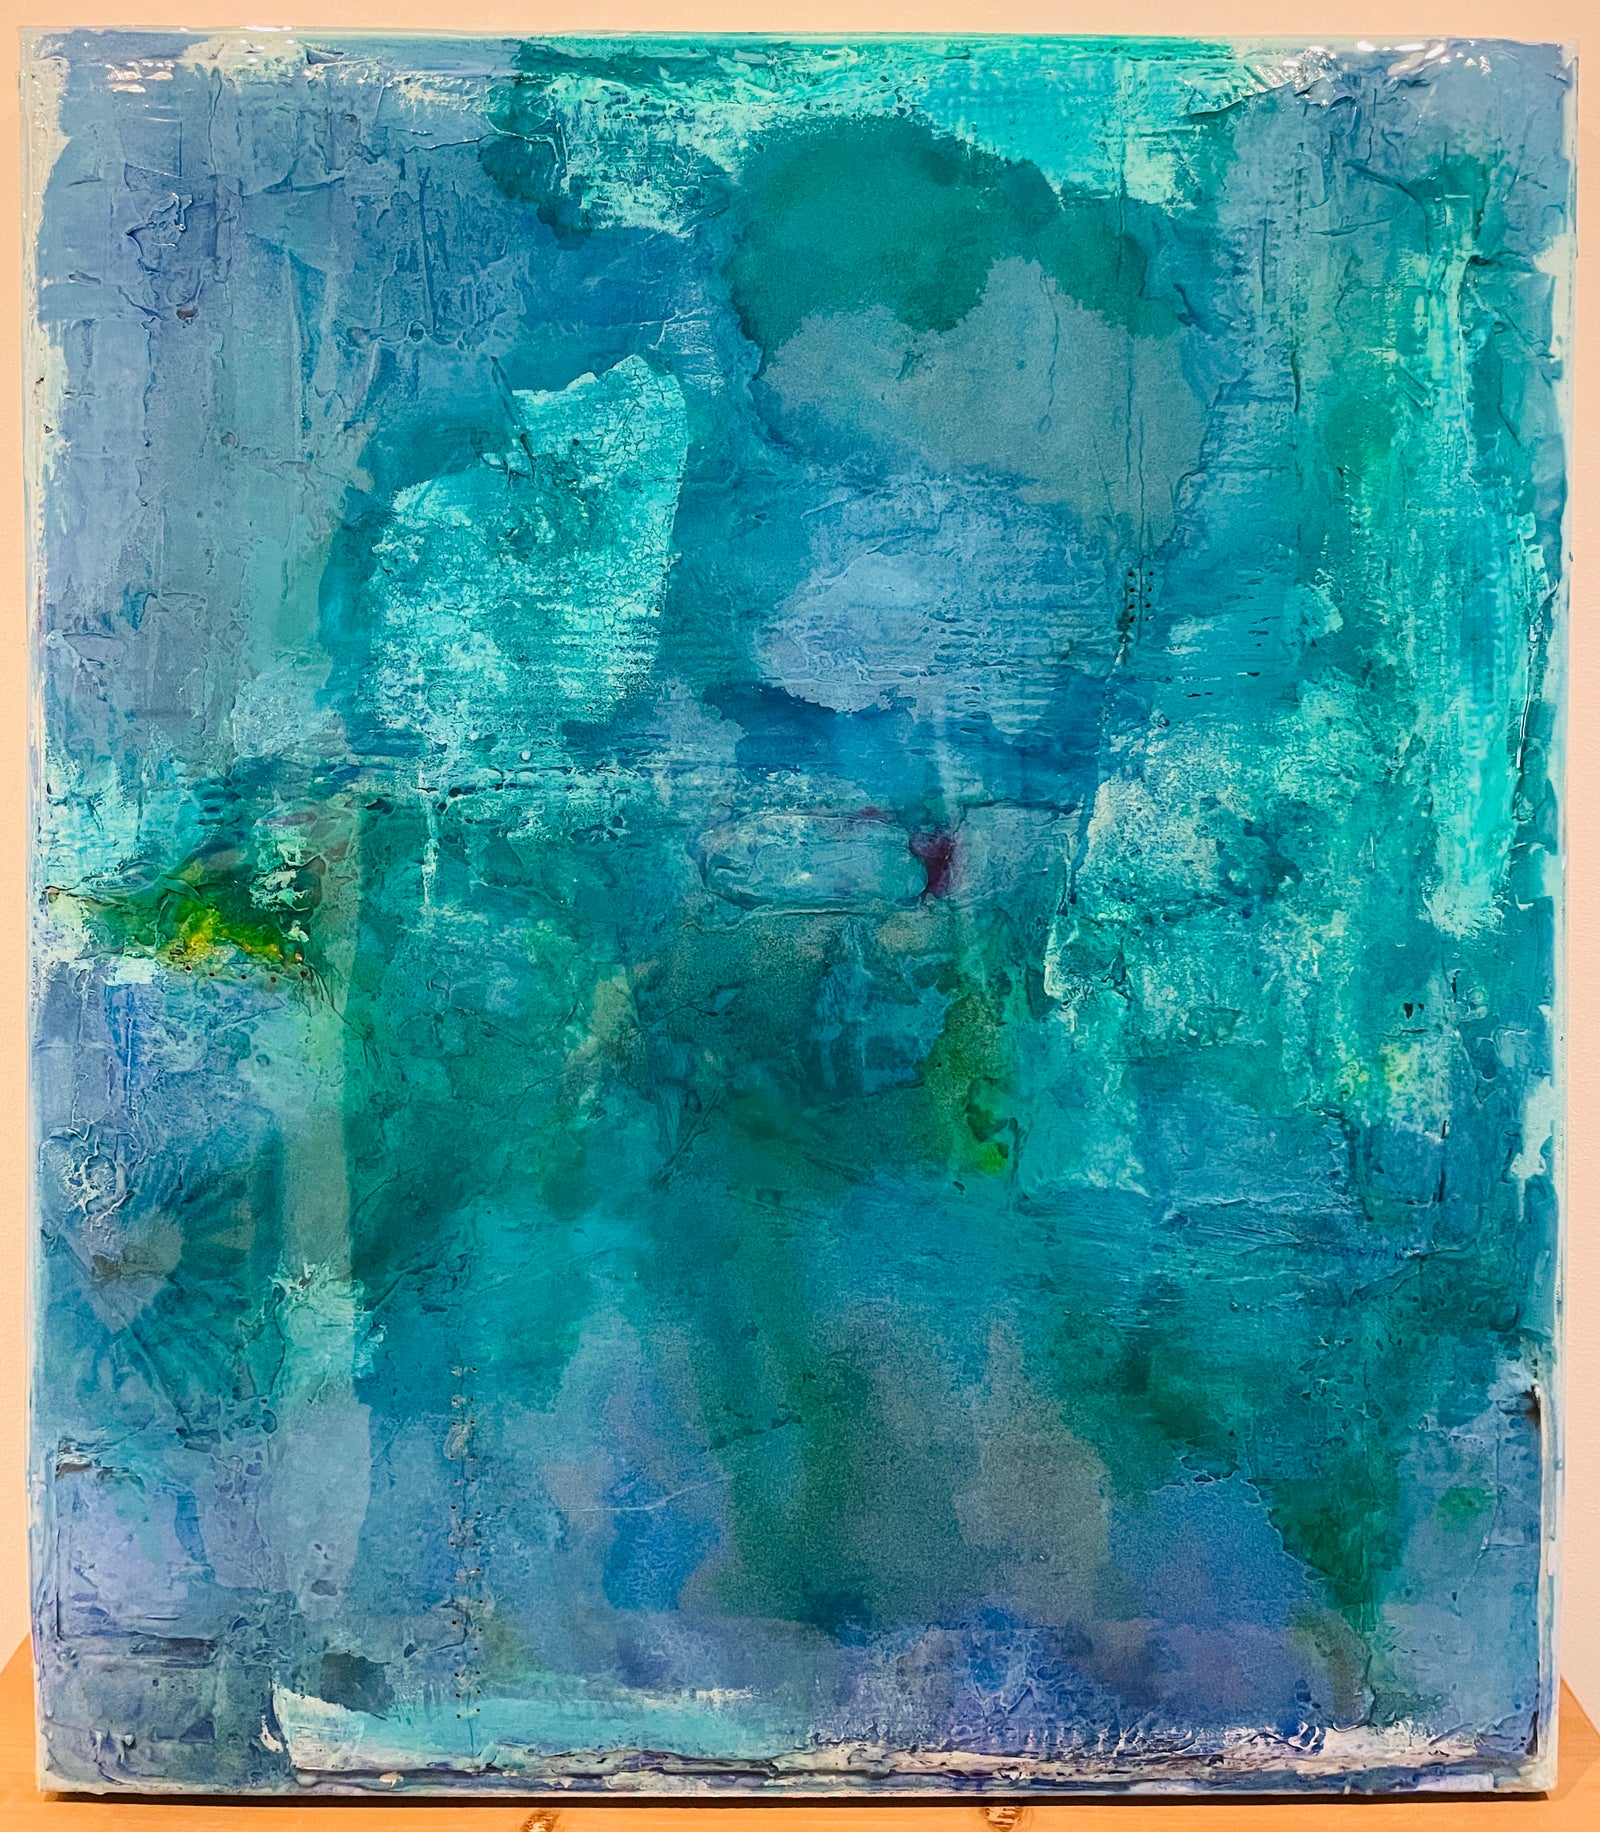 MAIK NOWODWORSKIs Kunstwerk "La Vie I"  fängt durch mixed Media die Farbe blau in einem lebendigen Gemälde auf. 